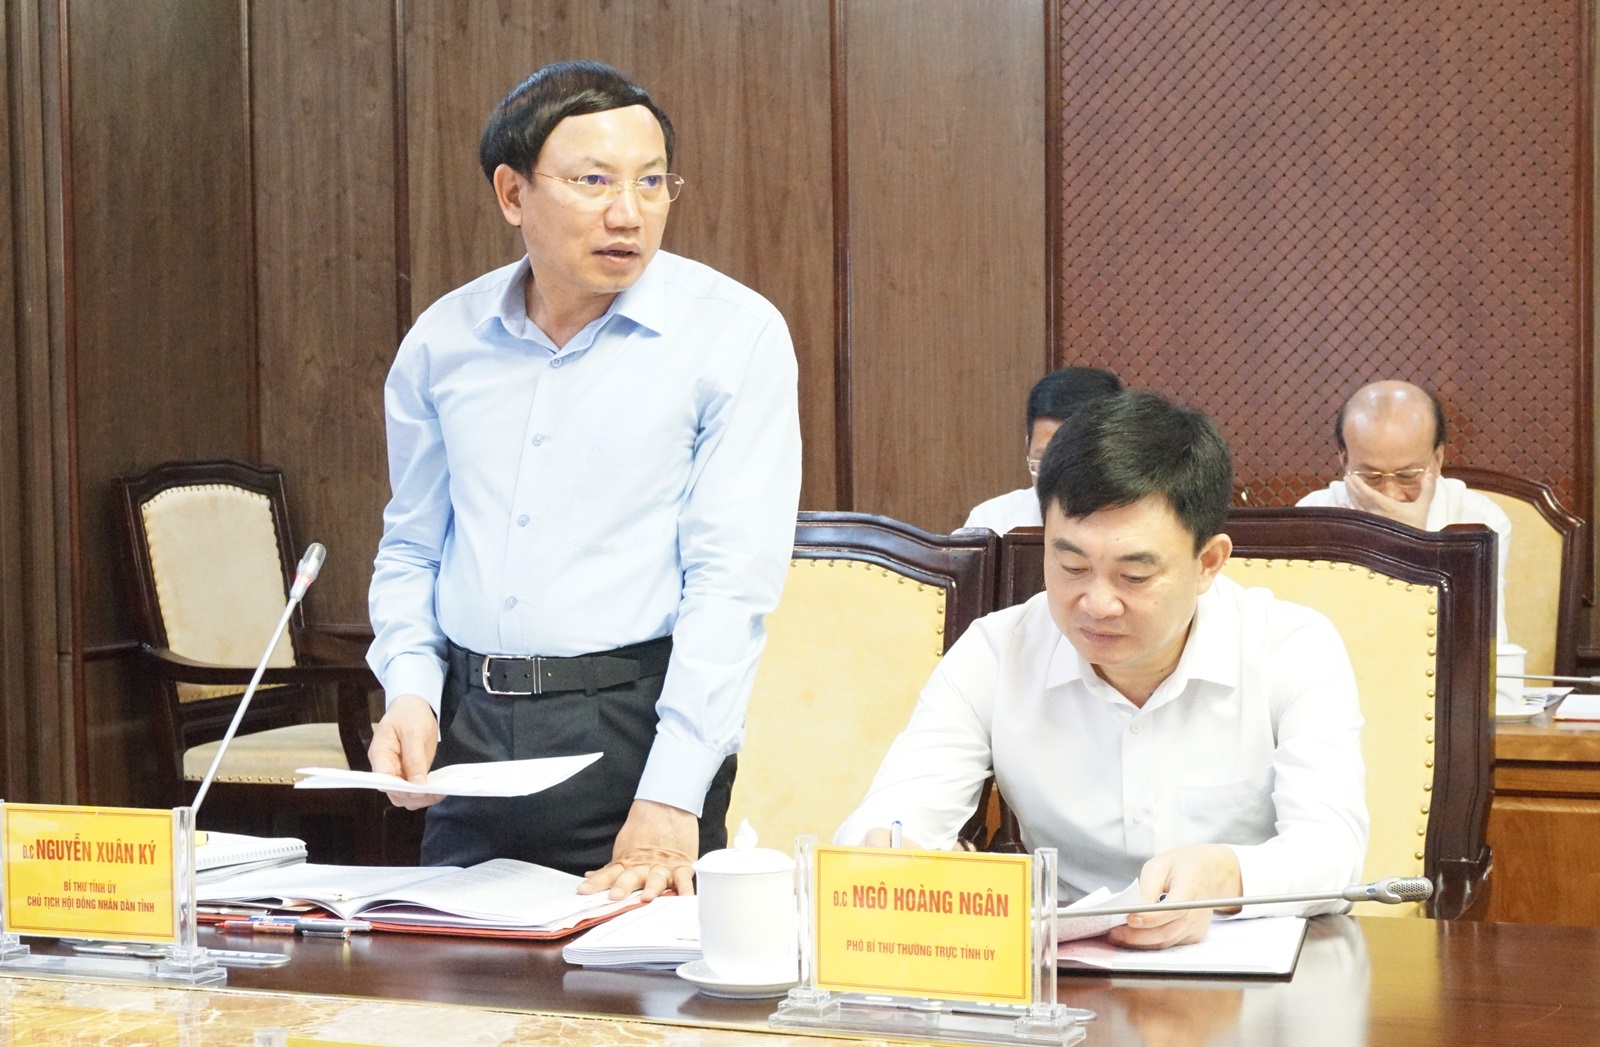 Đồng chí Nguyễn Xuân Ký, Bí thư Tỉnh ủy, Chủ tịch HĐND tỉnh, phát biểu tại buổi làm việc với Đoàn công tác của Ban Bí thư Trung ương Đảng.